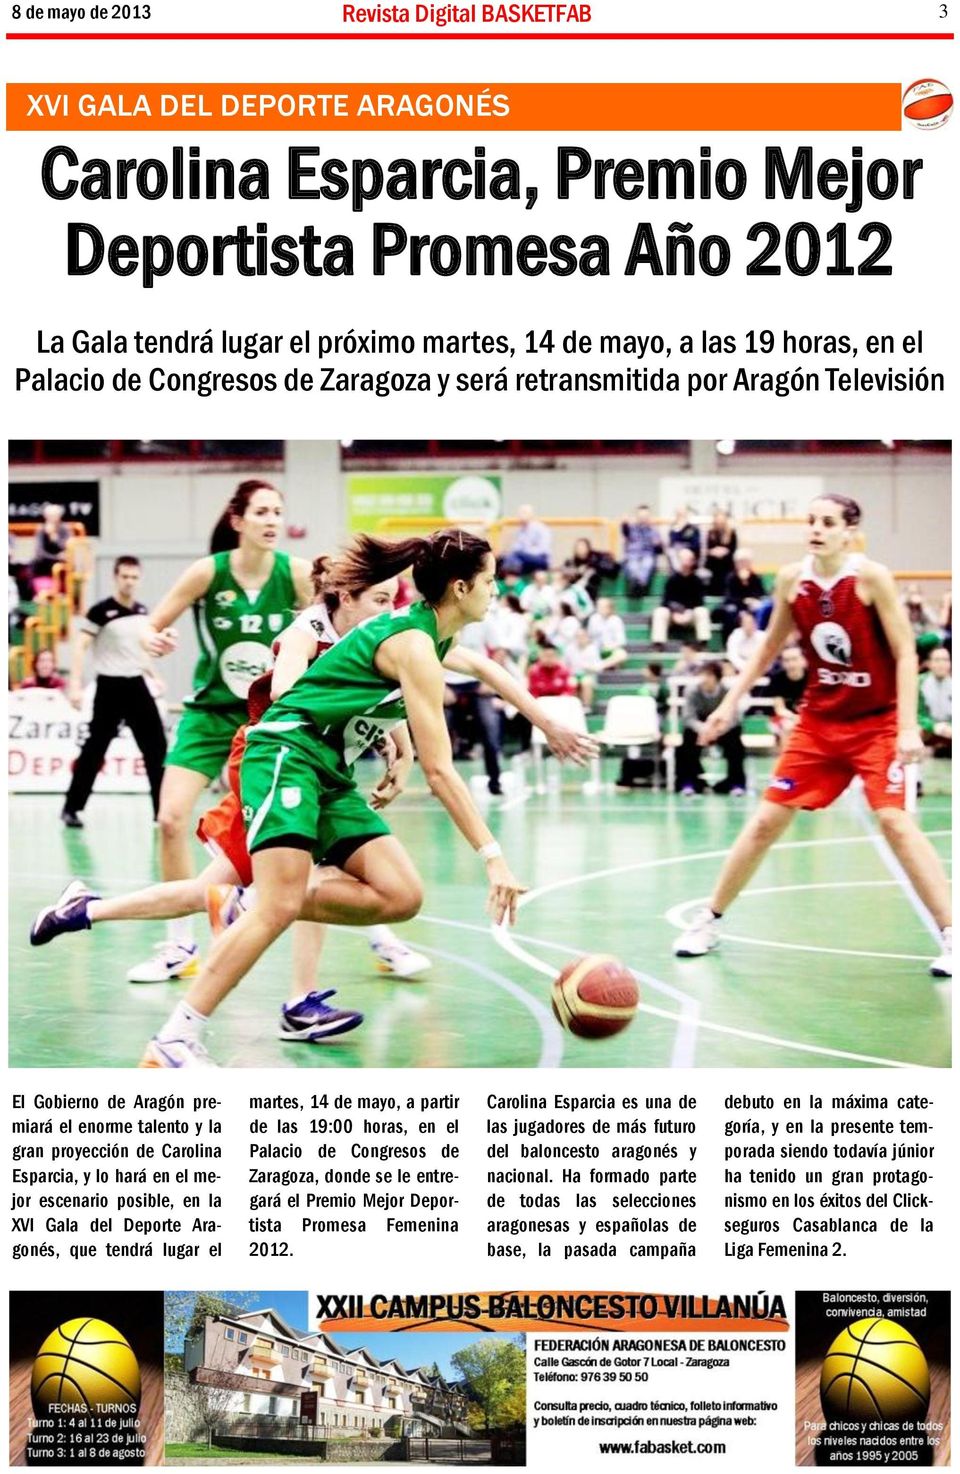 Deporte Aragonés, que tendrá lugar el martes, 14 de mayo, a partir de las 19:00 horas, en el Palacio de Congresos de Zaragoza, donde se le entregará el Premio Mejor Deportista Promesa Femenina 2012.